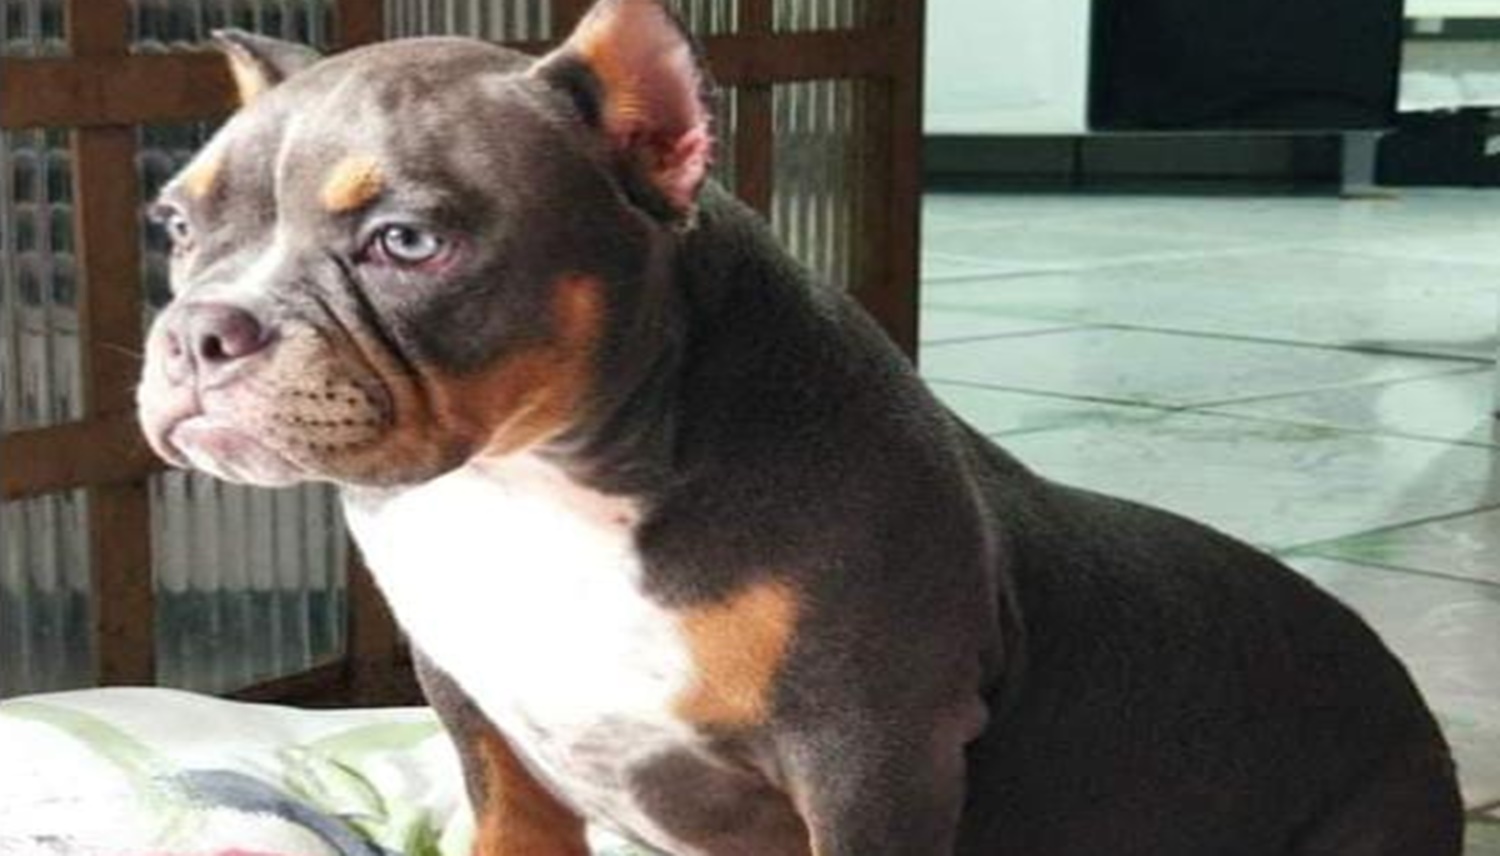 PROCURA-SE: Cachorra é supostamente furtada e donos estão desesperados